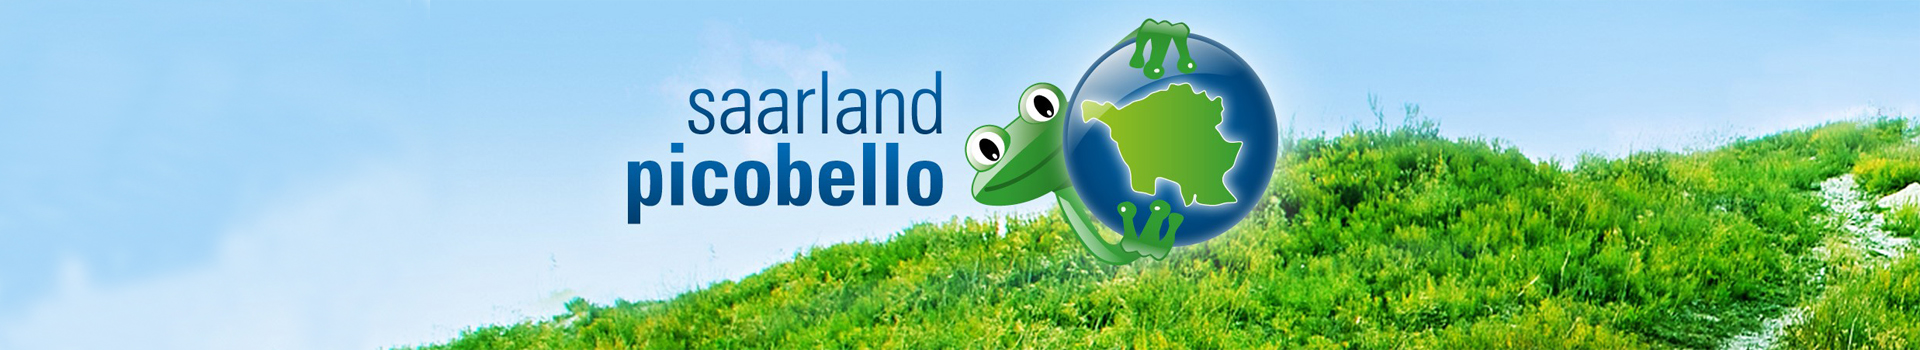 Header der Kampagne saarland picobello mit Picobello Frosch, der einen Globus mit Saarlandkarte trägt und auf einer Wiese steht. 